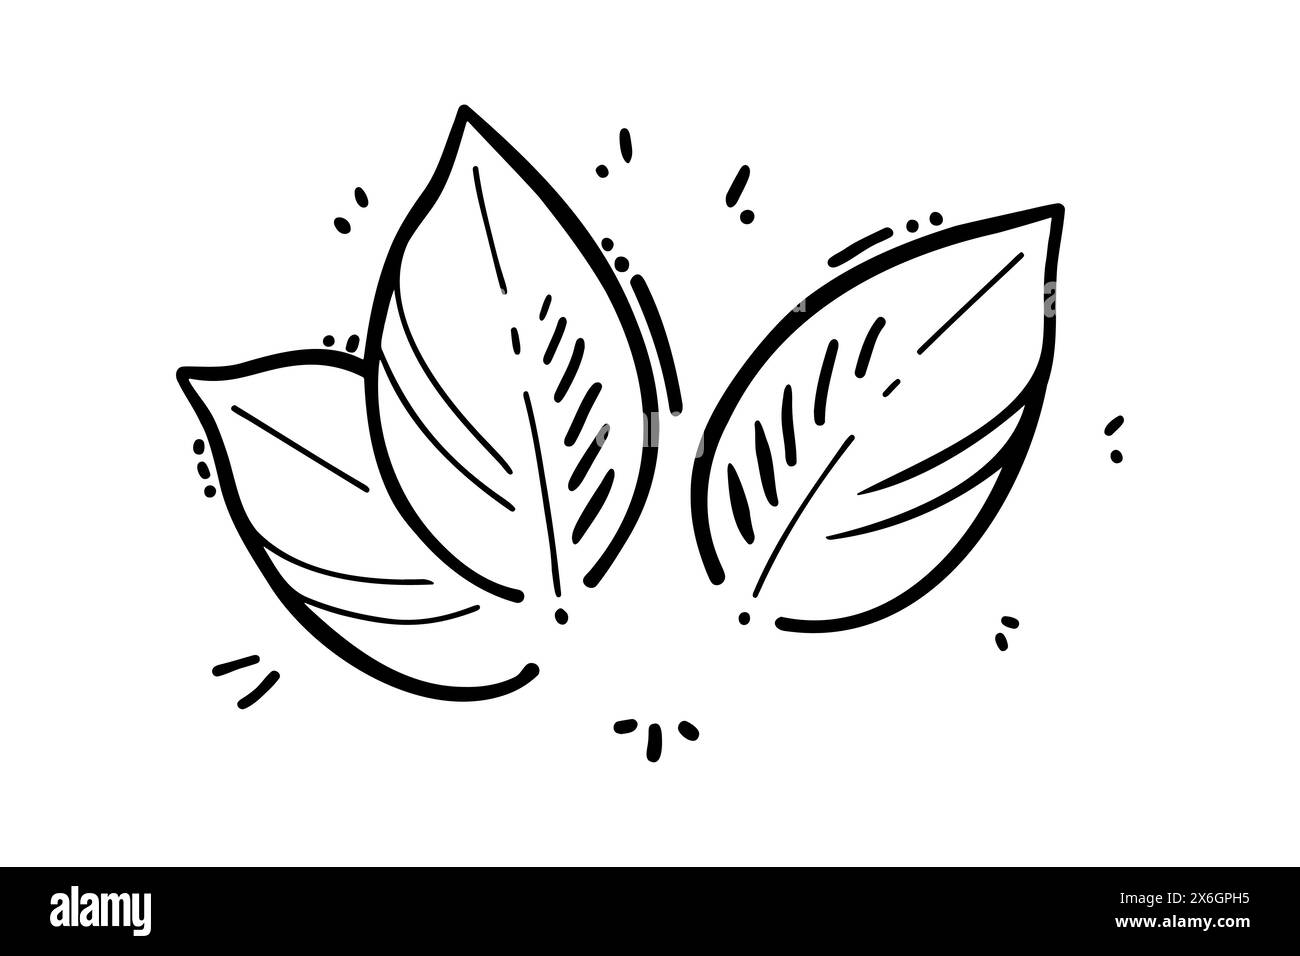 Disegno di scarabocchi stilati con foglie di menta, contorno di foglie impostato, isolato su sfondo bianco. Illustrazione vettoriale Illustrazione Vettoriale